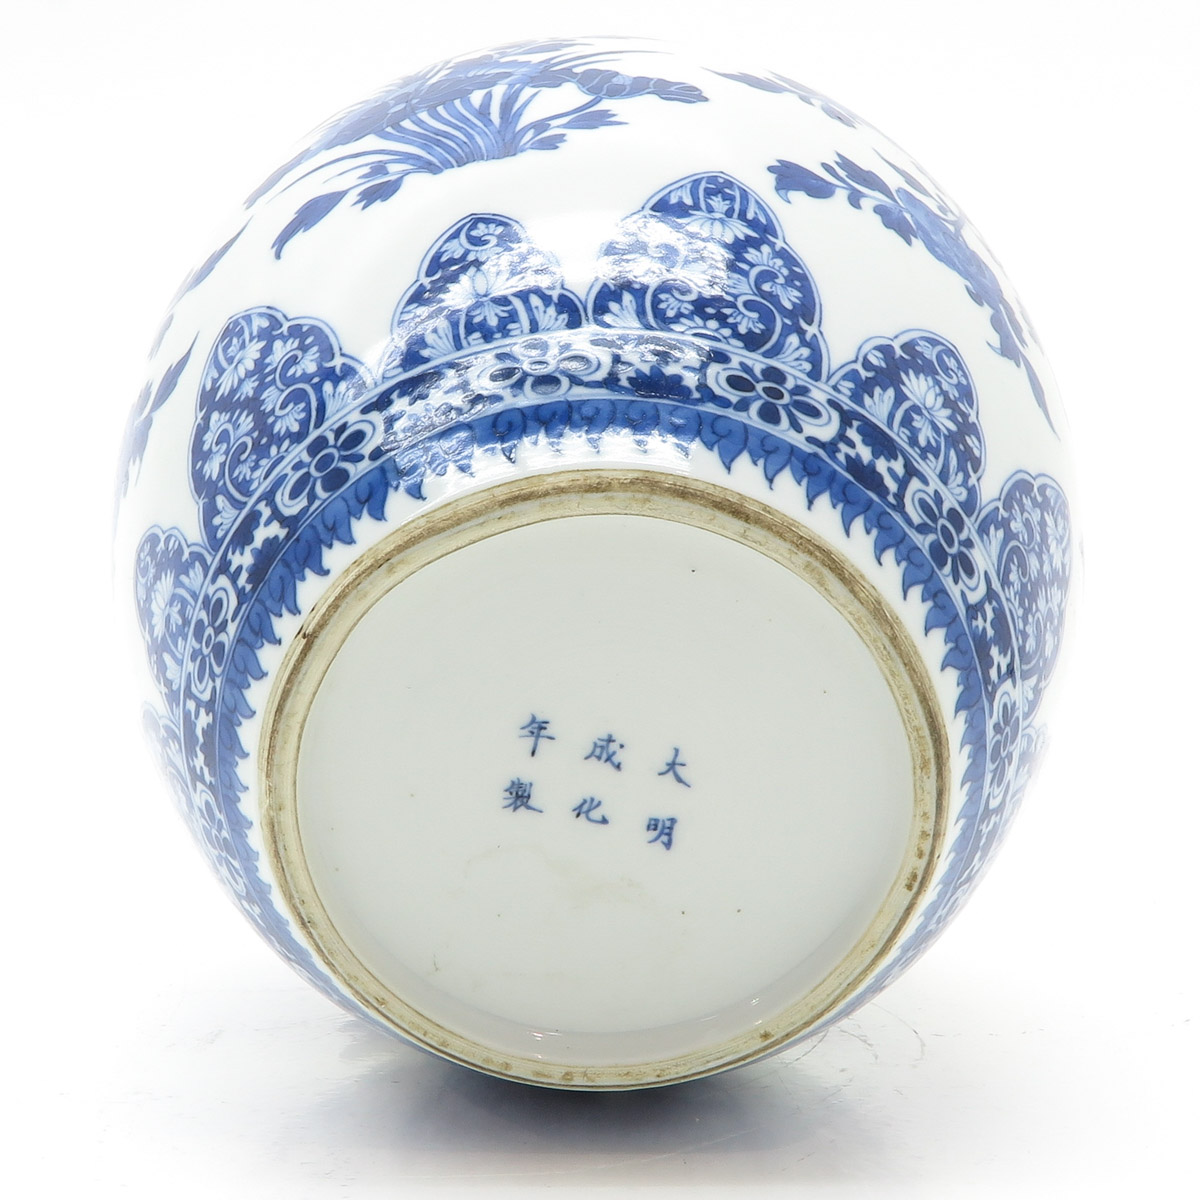 China Porcelain Ginger Jar - Image 6 of 6